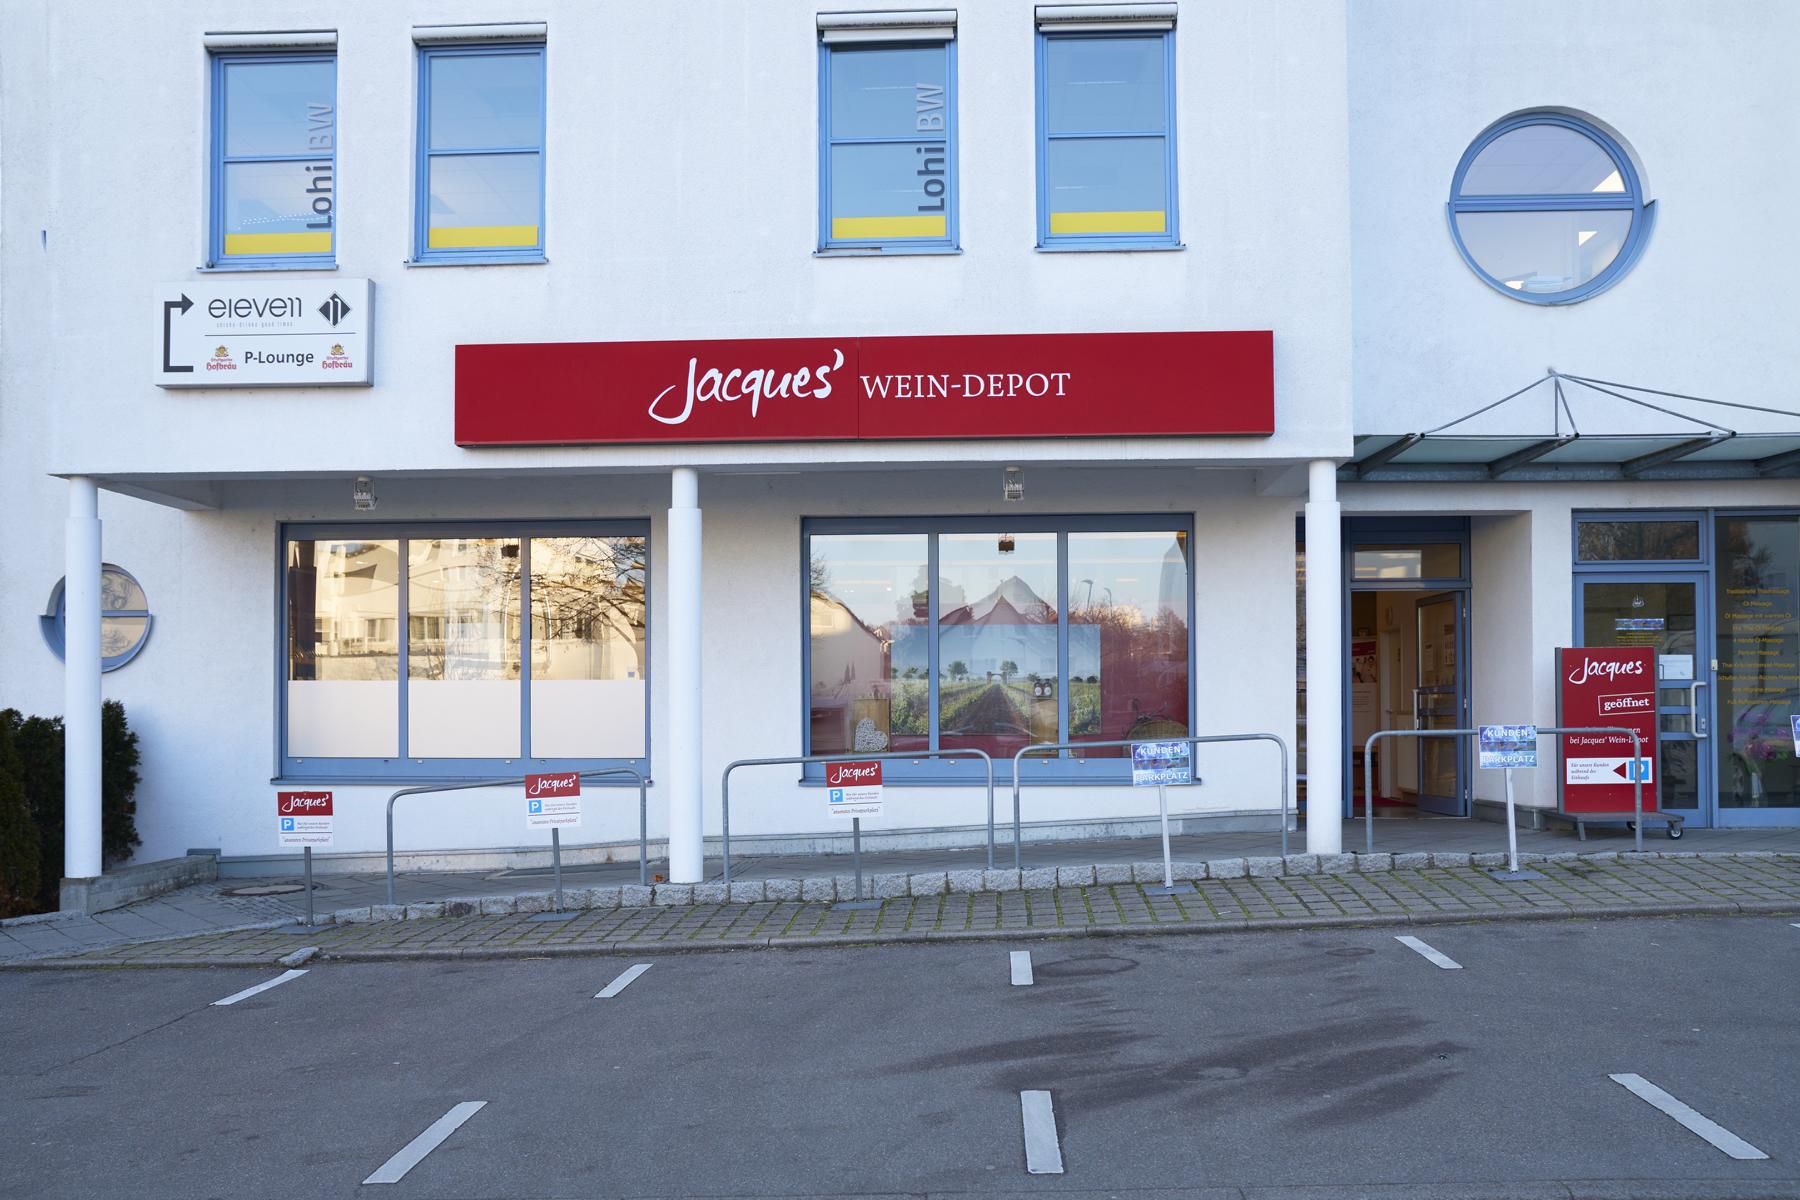 Bild 2 Jacques’ Wein-Depot Leinfelden-Echterdingen in Leinfelden-Echterdingen